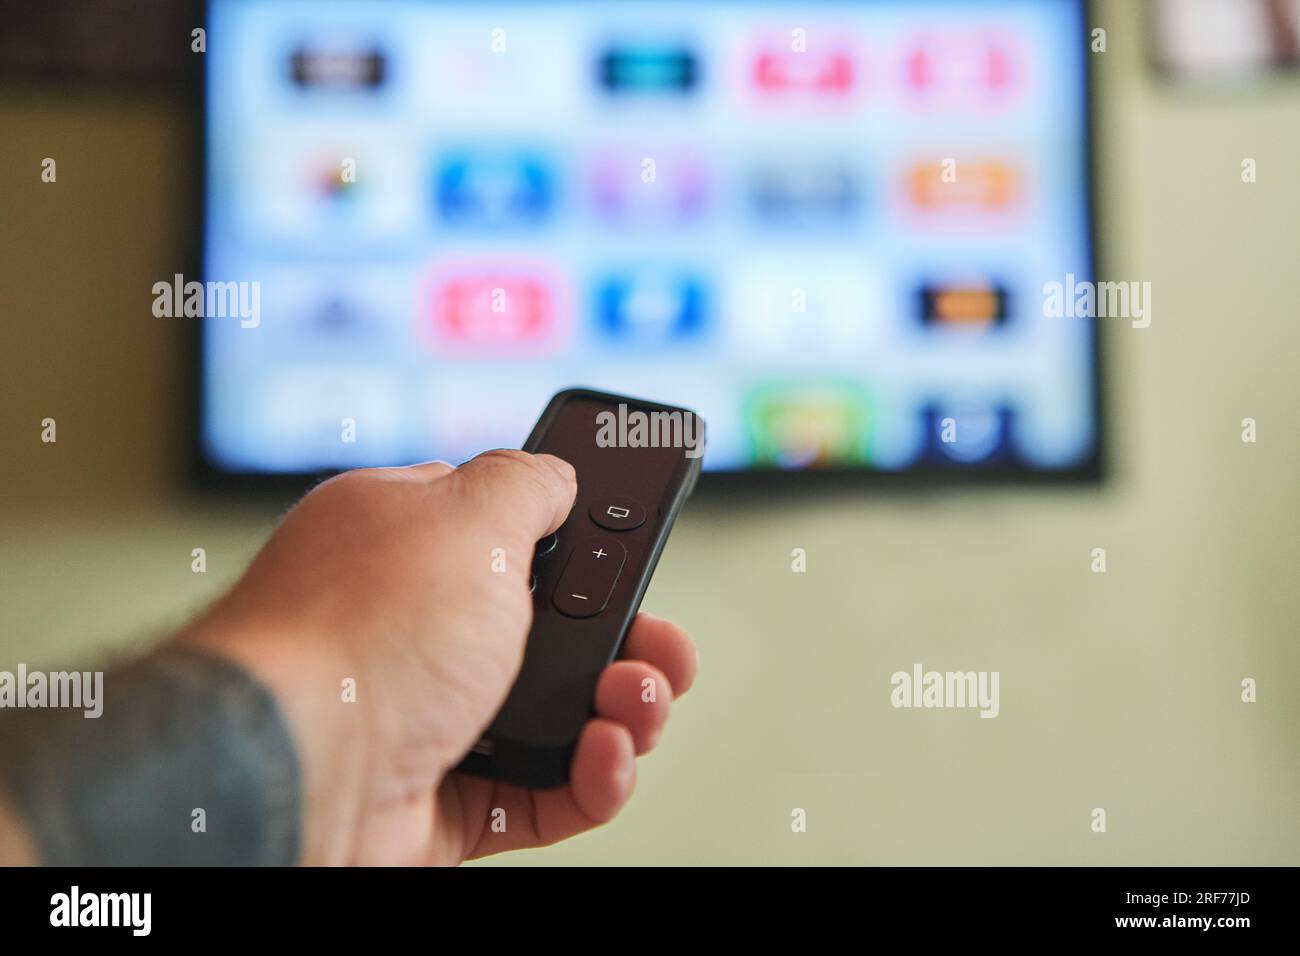 Multimedia-Streaming-Konzept. Fernbedienung mit Handbedienung. TV-Bildschirm mit vielen Bildern. Stockfoto